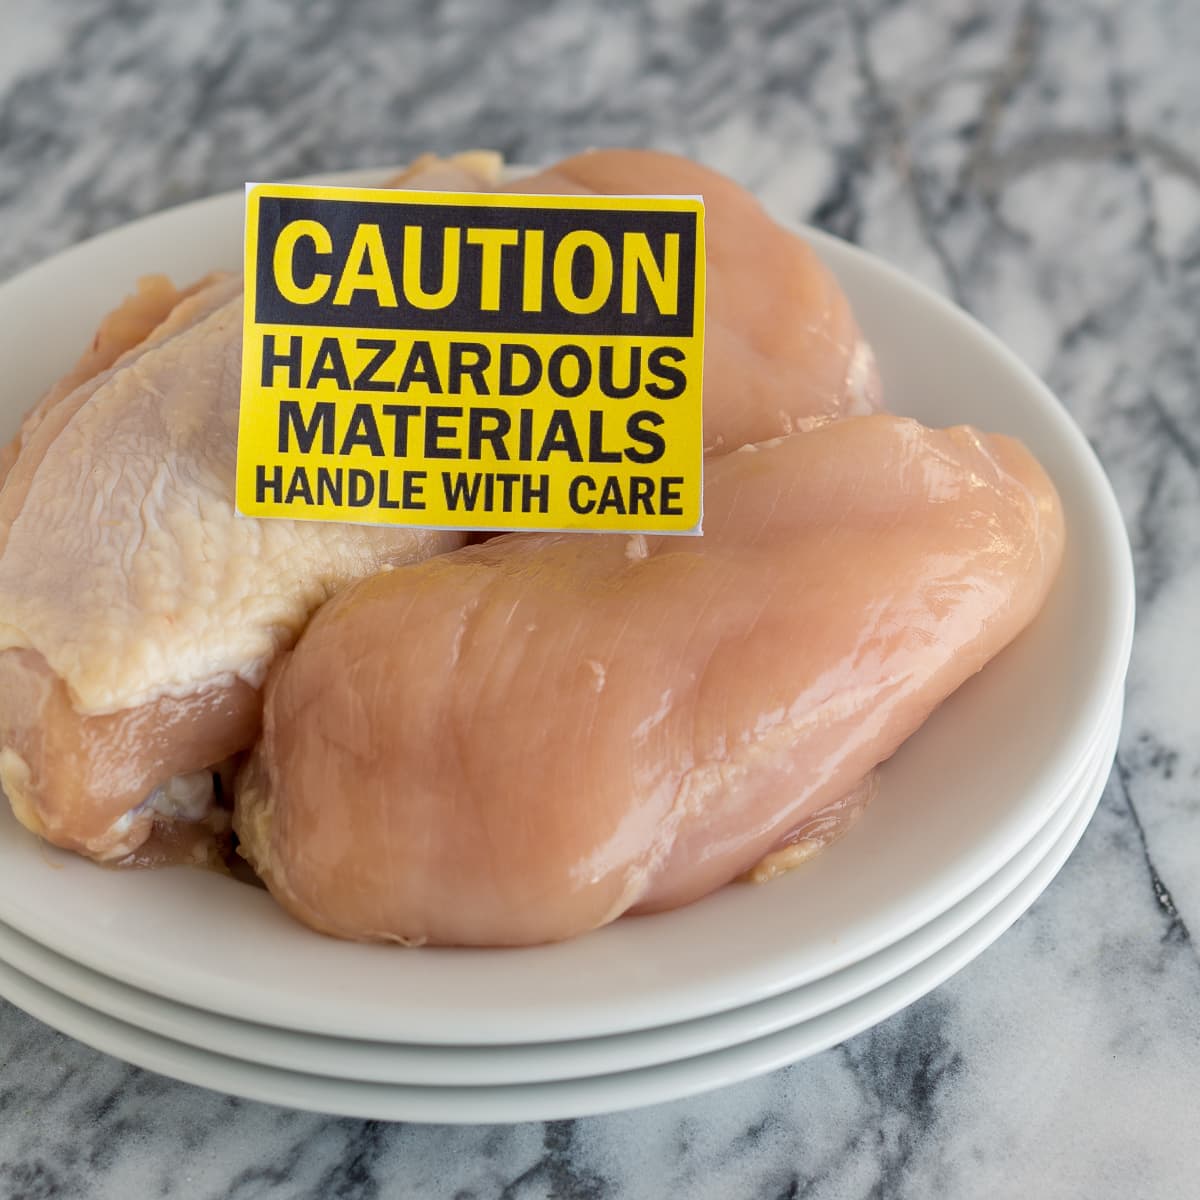 Chicken food safety